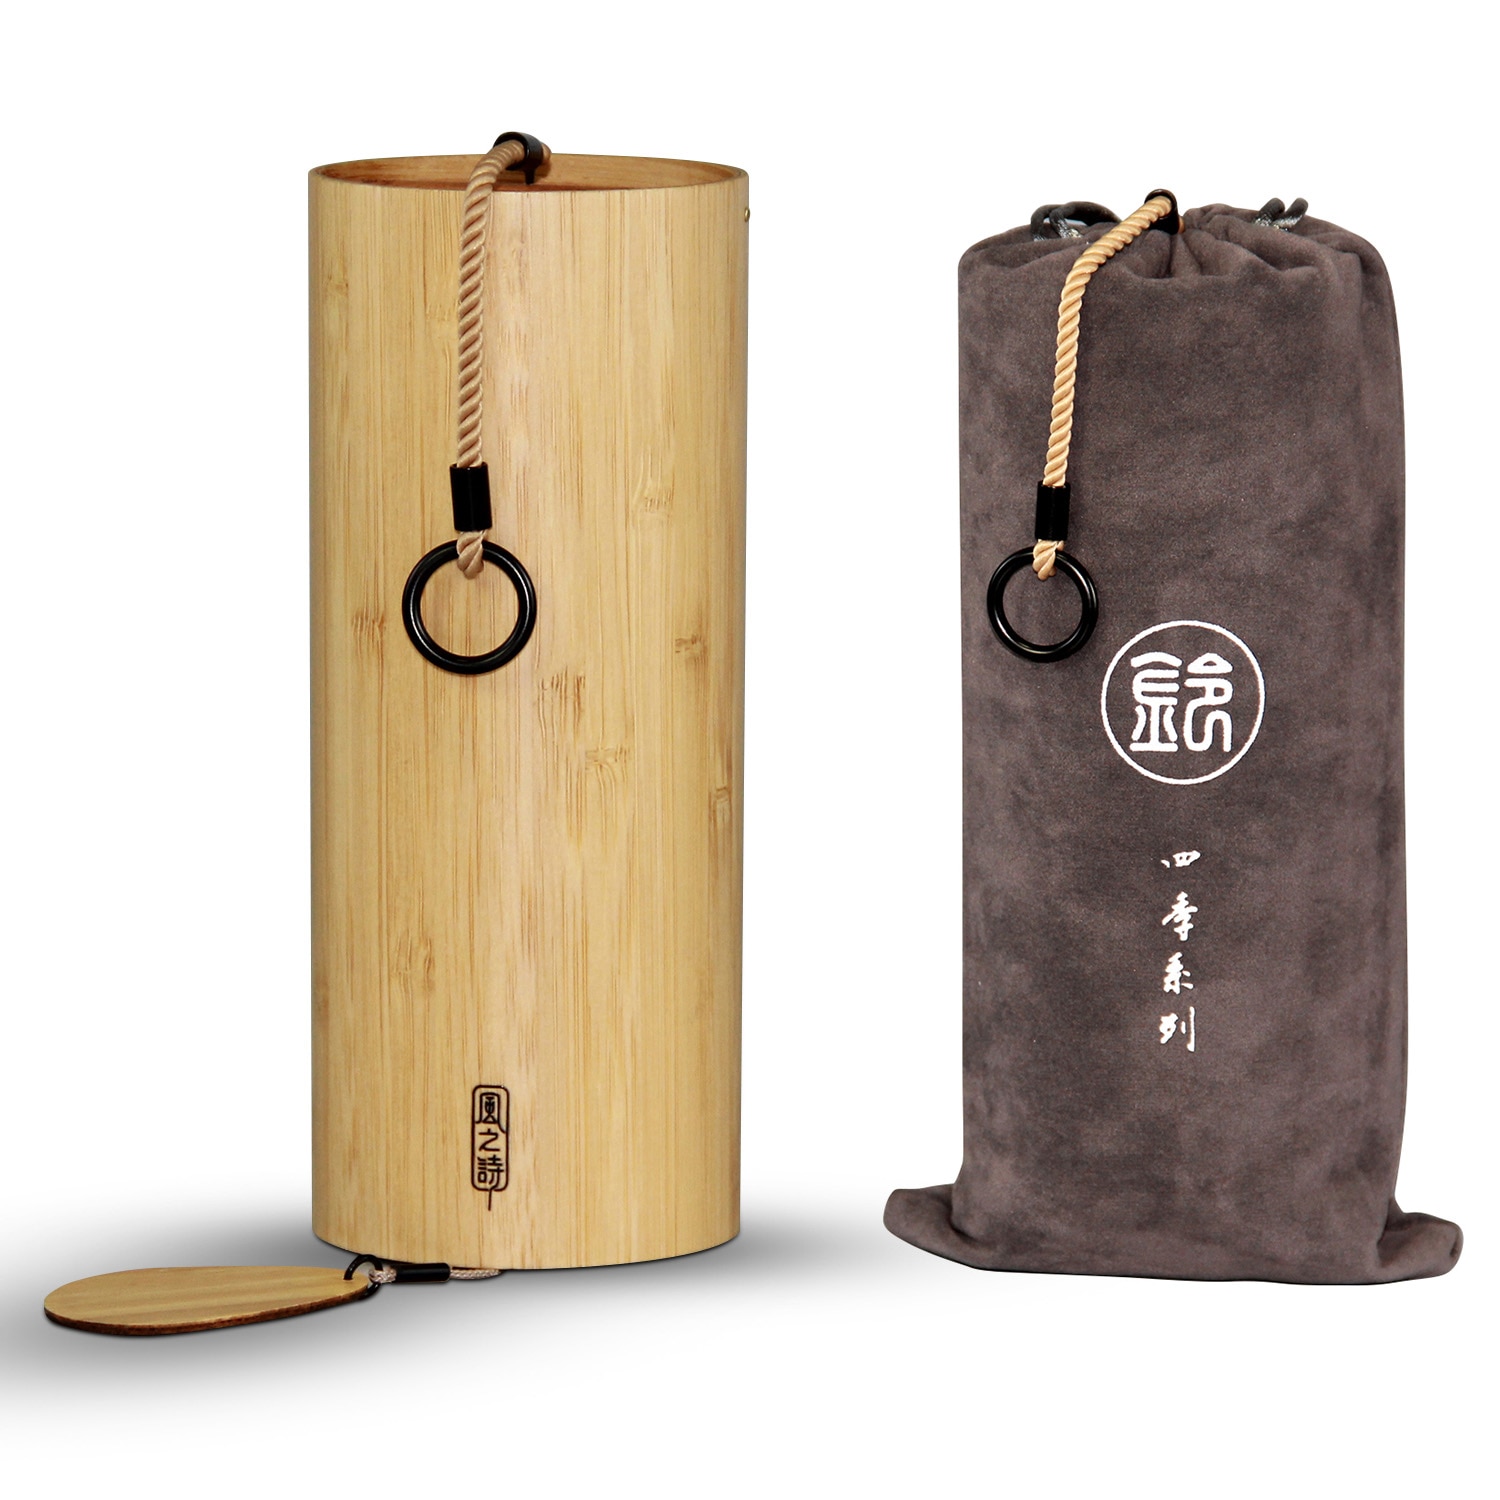 Bamboe Windgong Windchime Windbell Voor Outdoor Tuin Patio Home Decoratie Zen Meditatie Ontspanning Winter Akkoord G-B-D-C